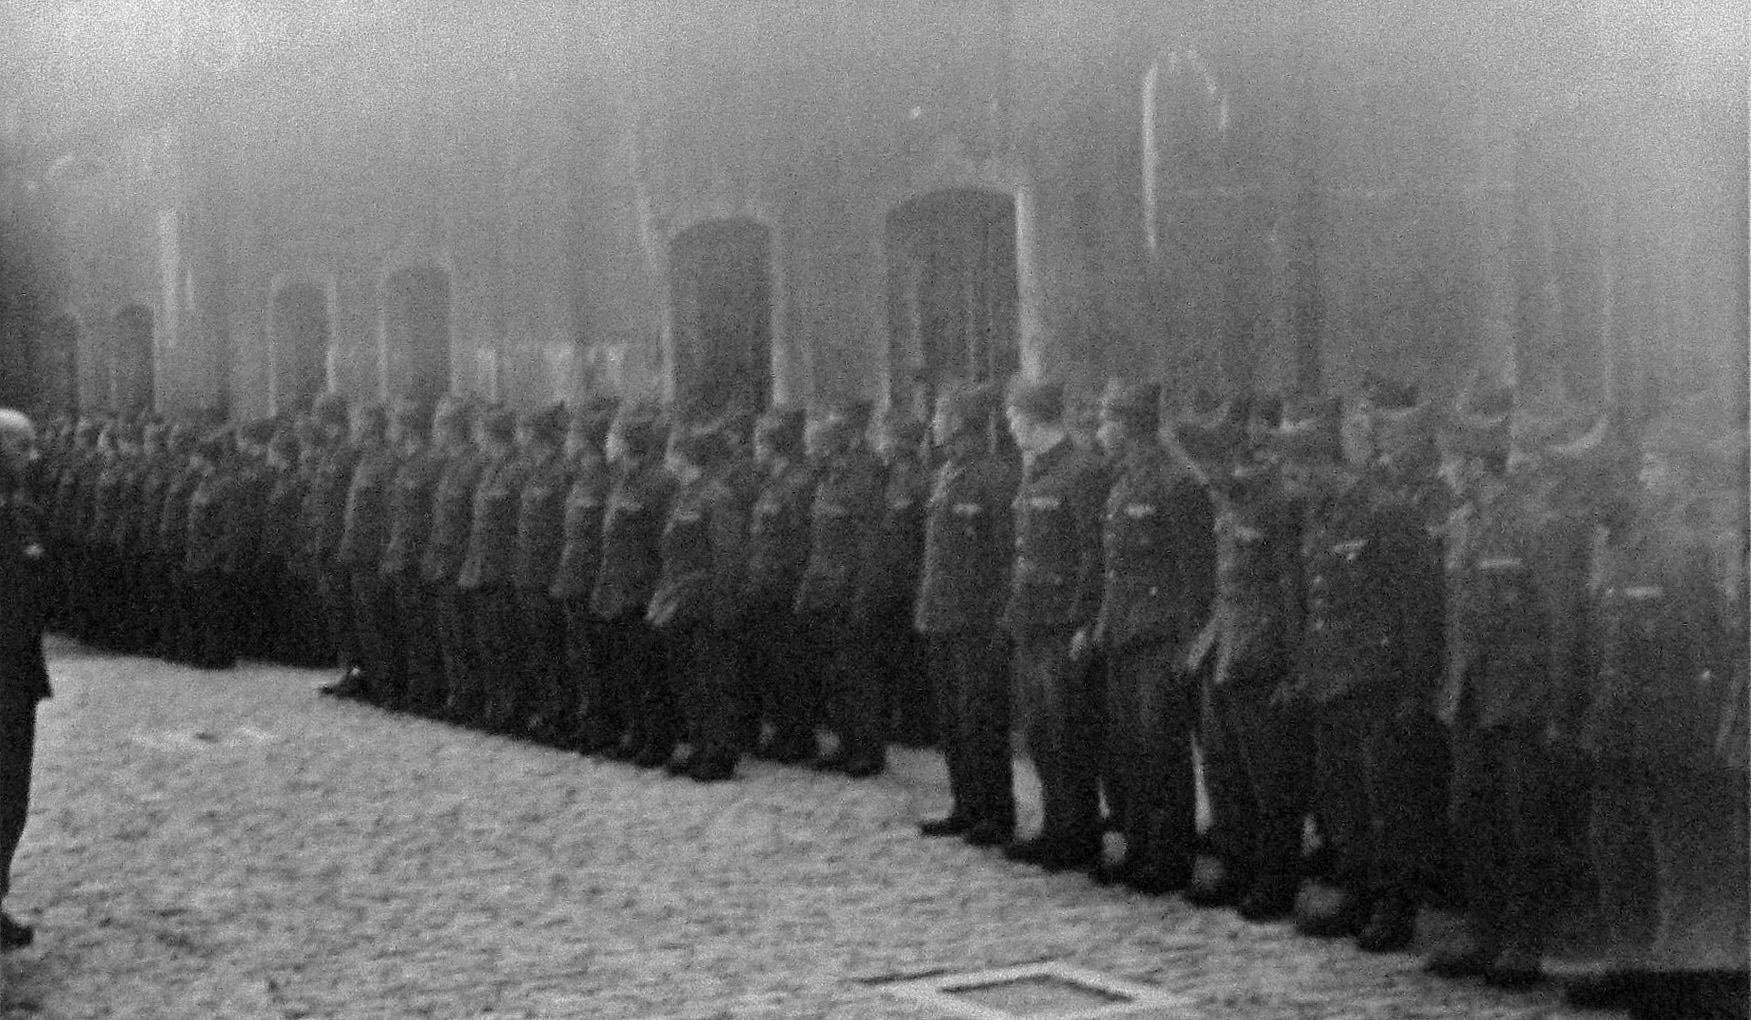 Political prisoners at Fort Breendonk, Belgium, 13 Jun 1941